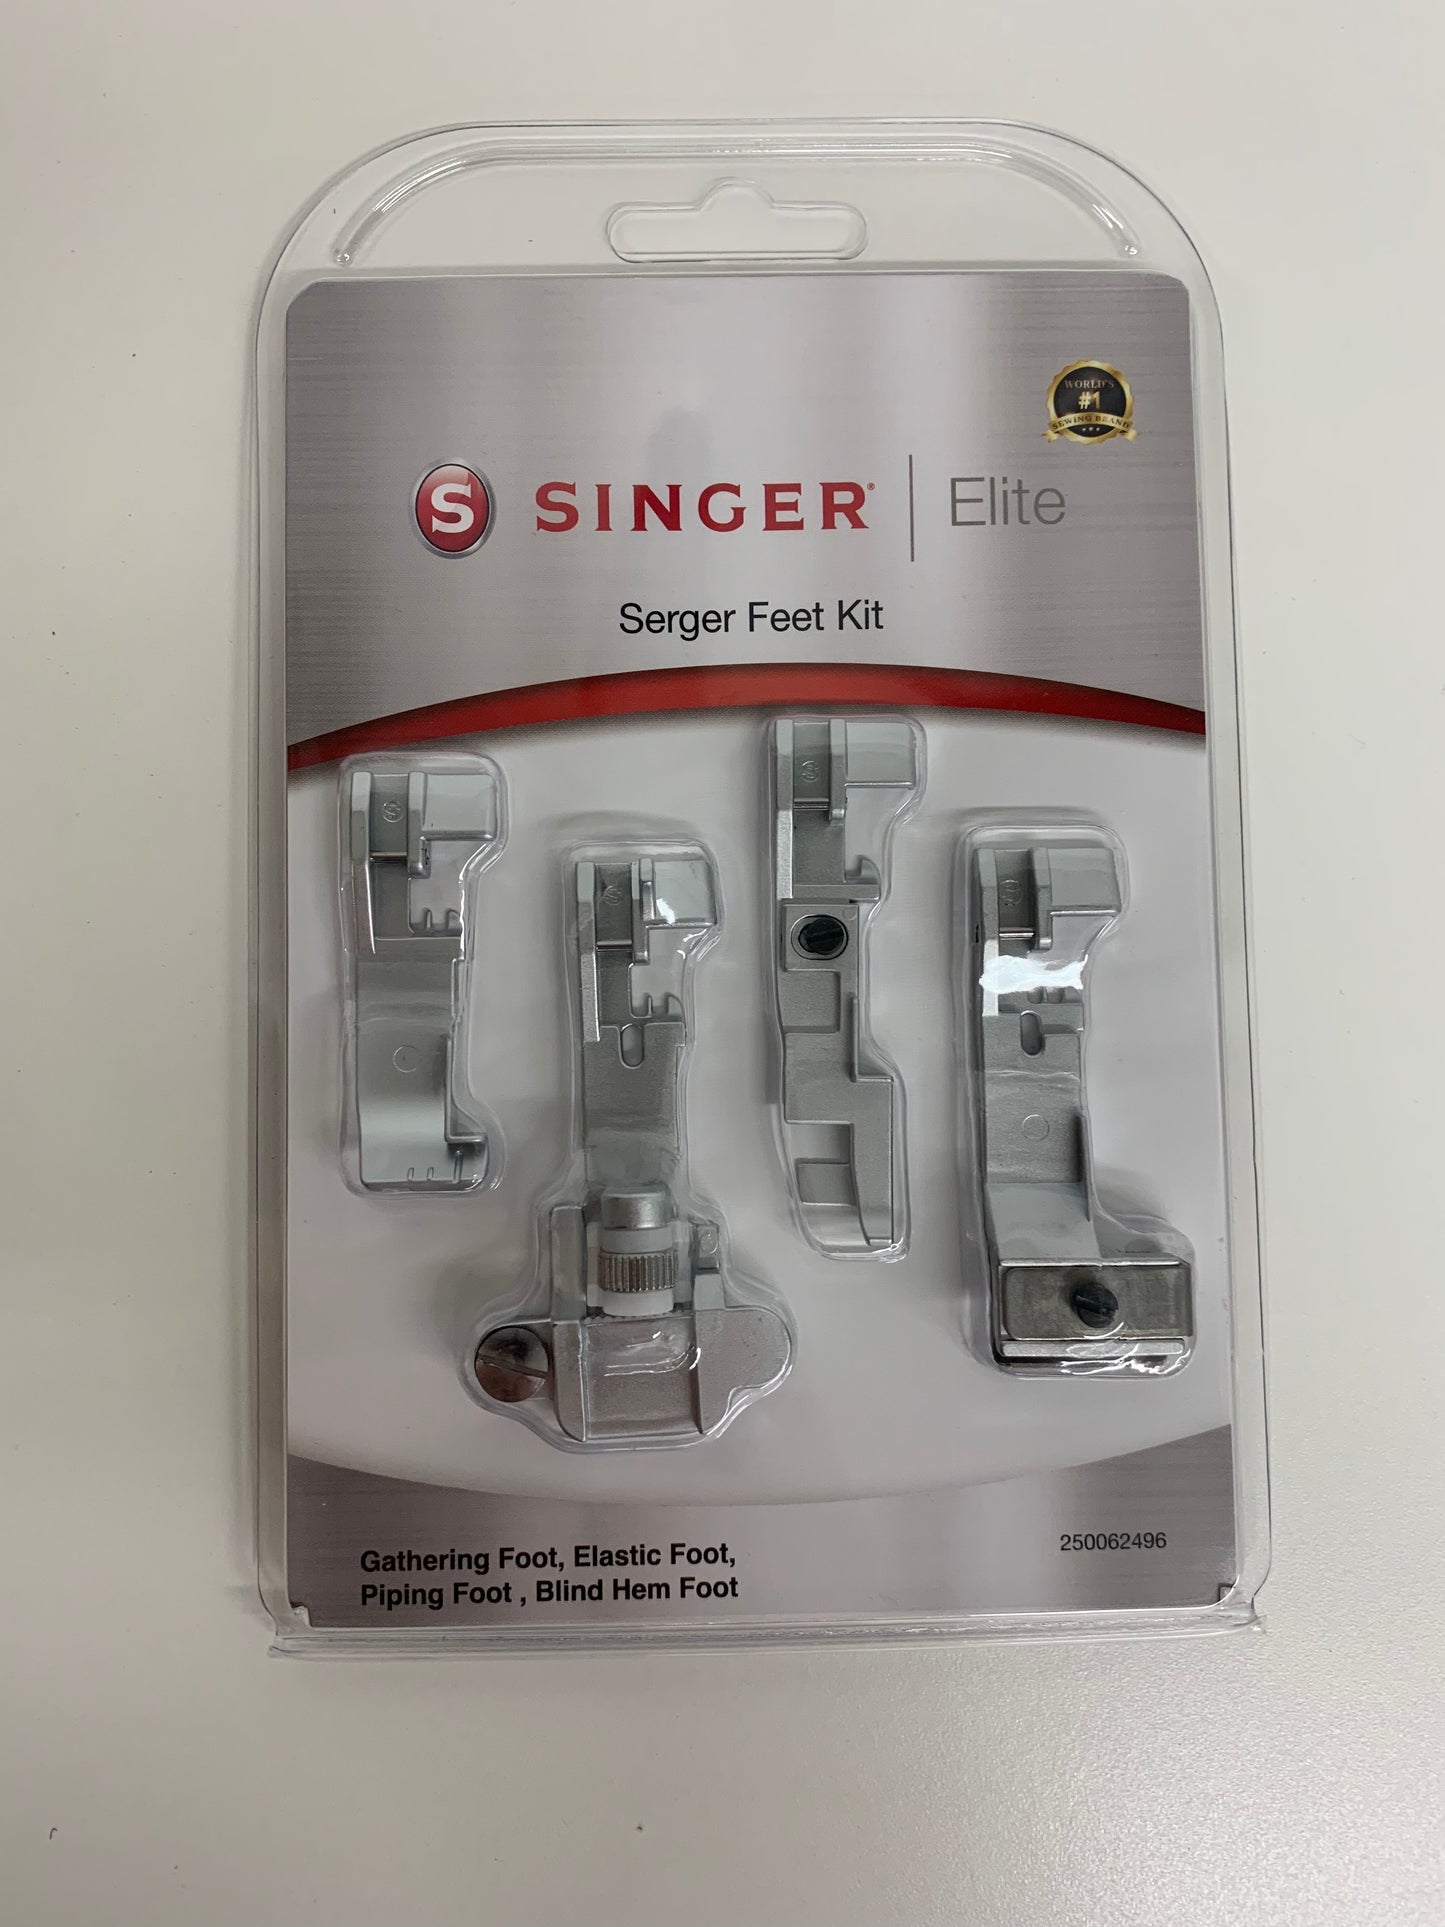 Singer Elite Serger Feet Kit 250062496